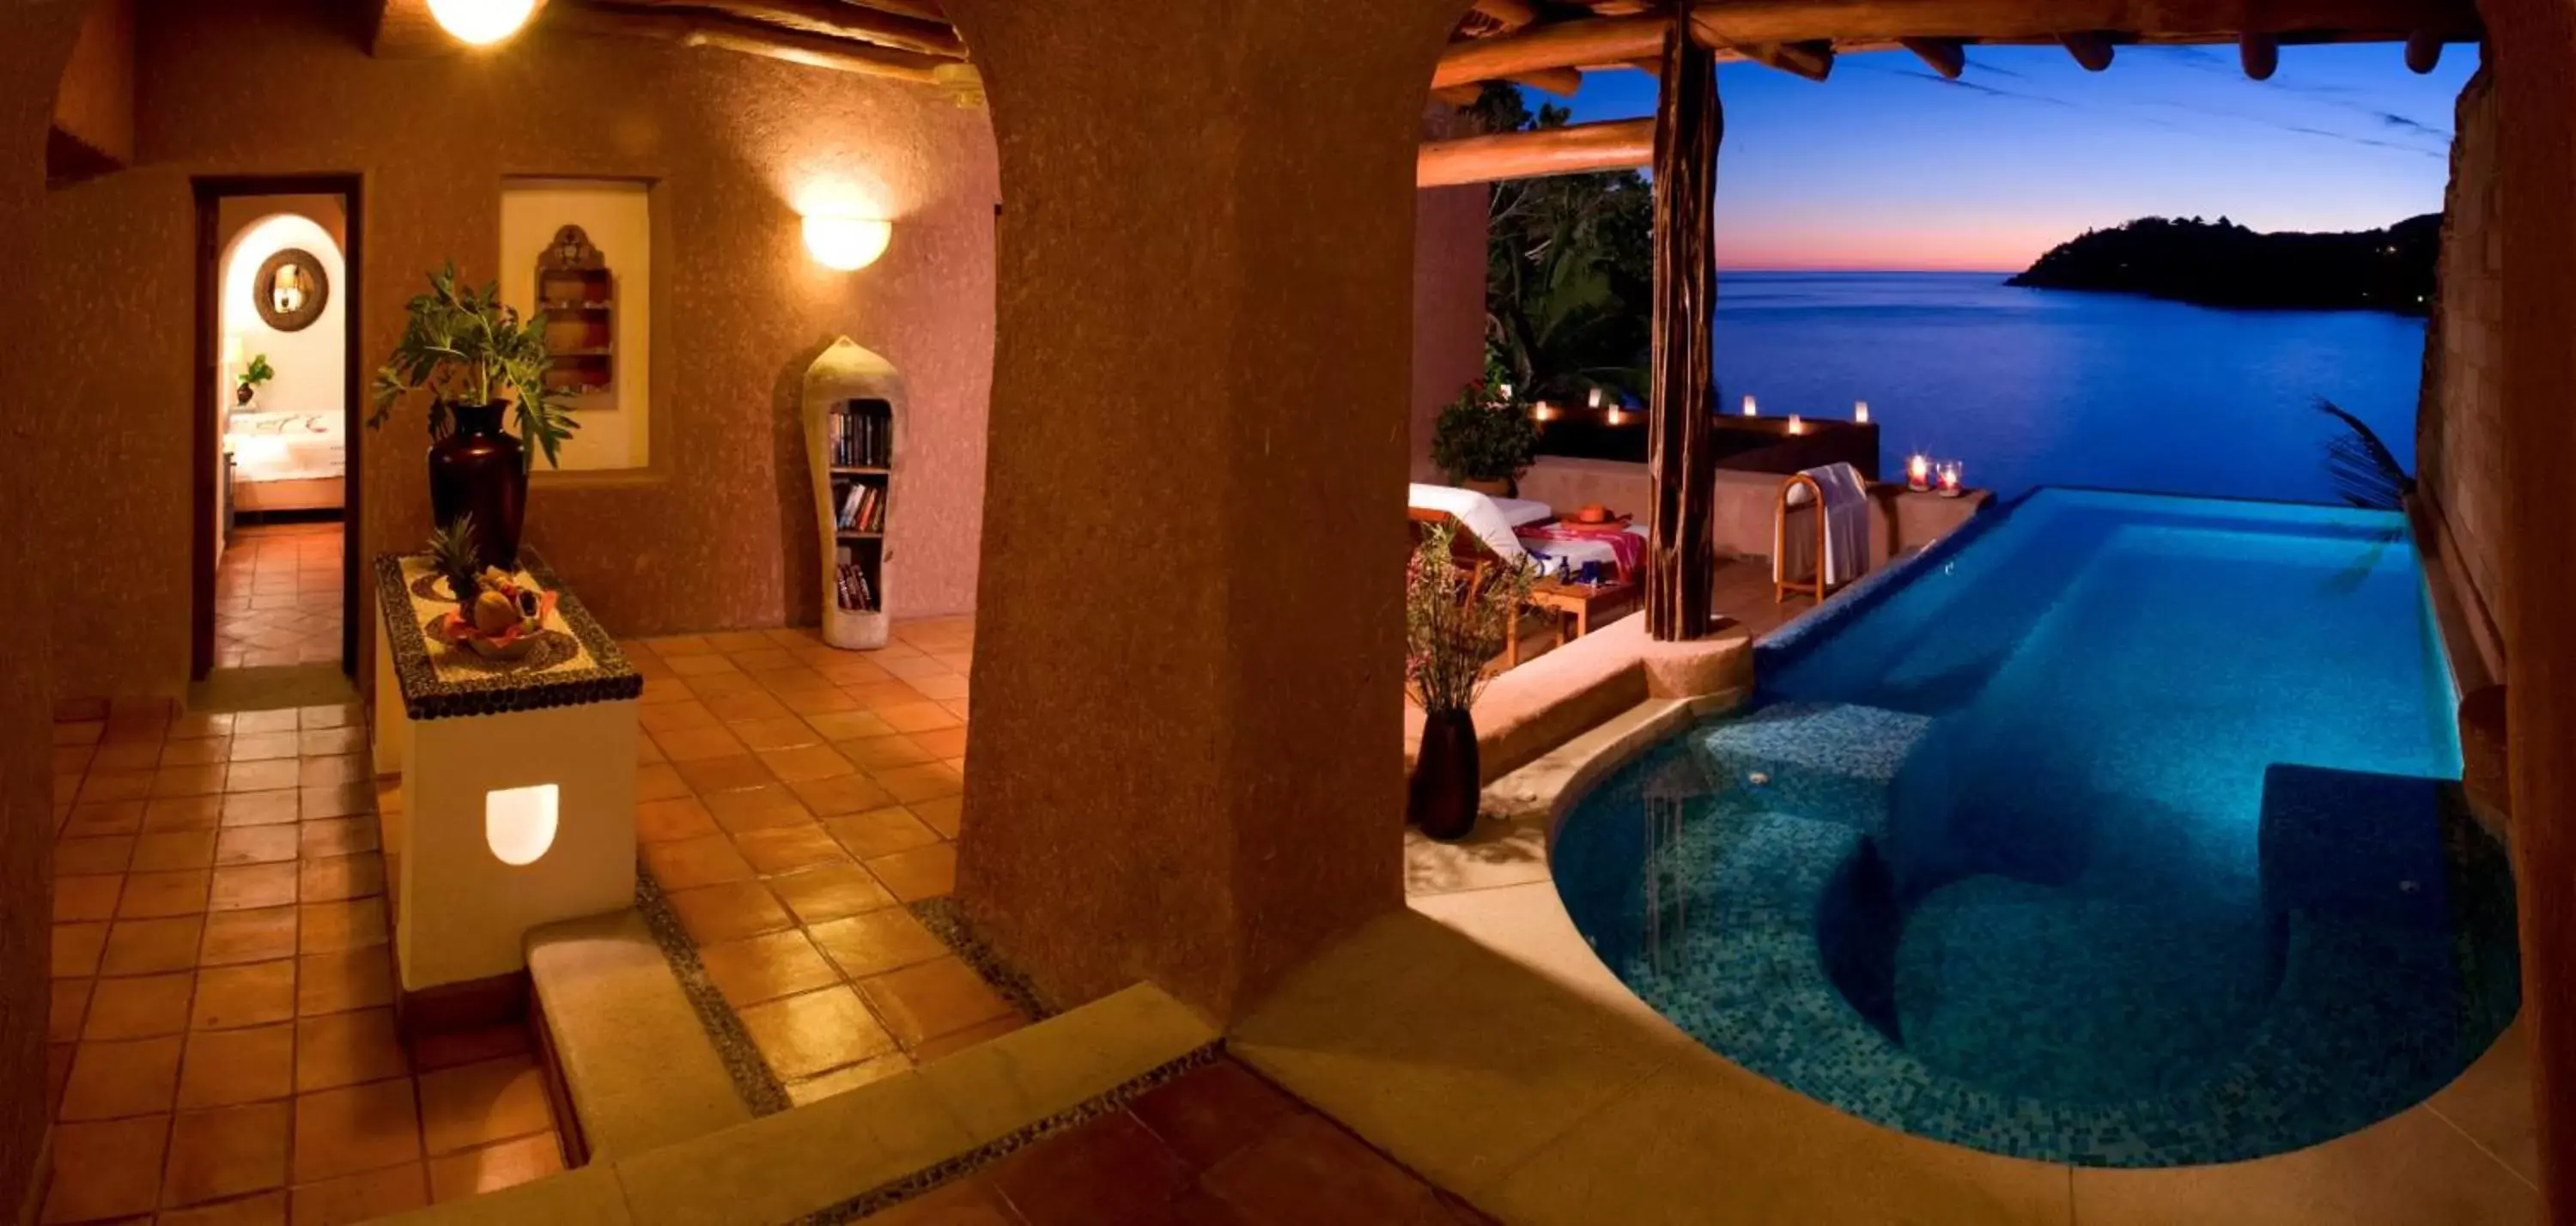 Balcony/Terrace, Swimming Pool in La Casa Que Canta